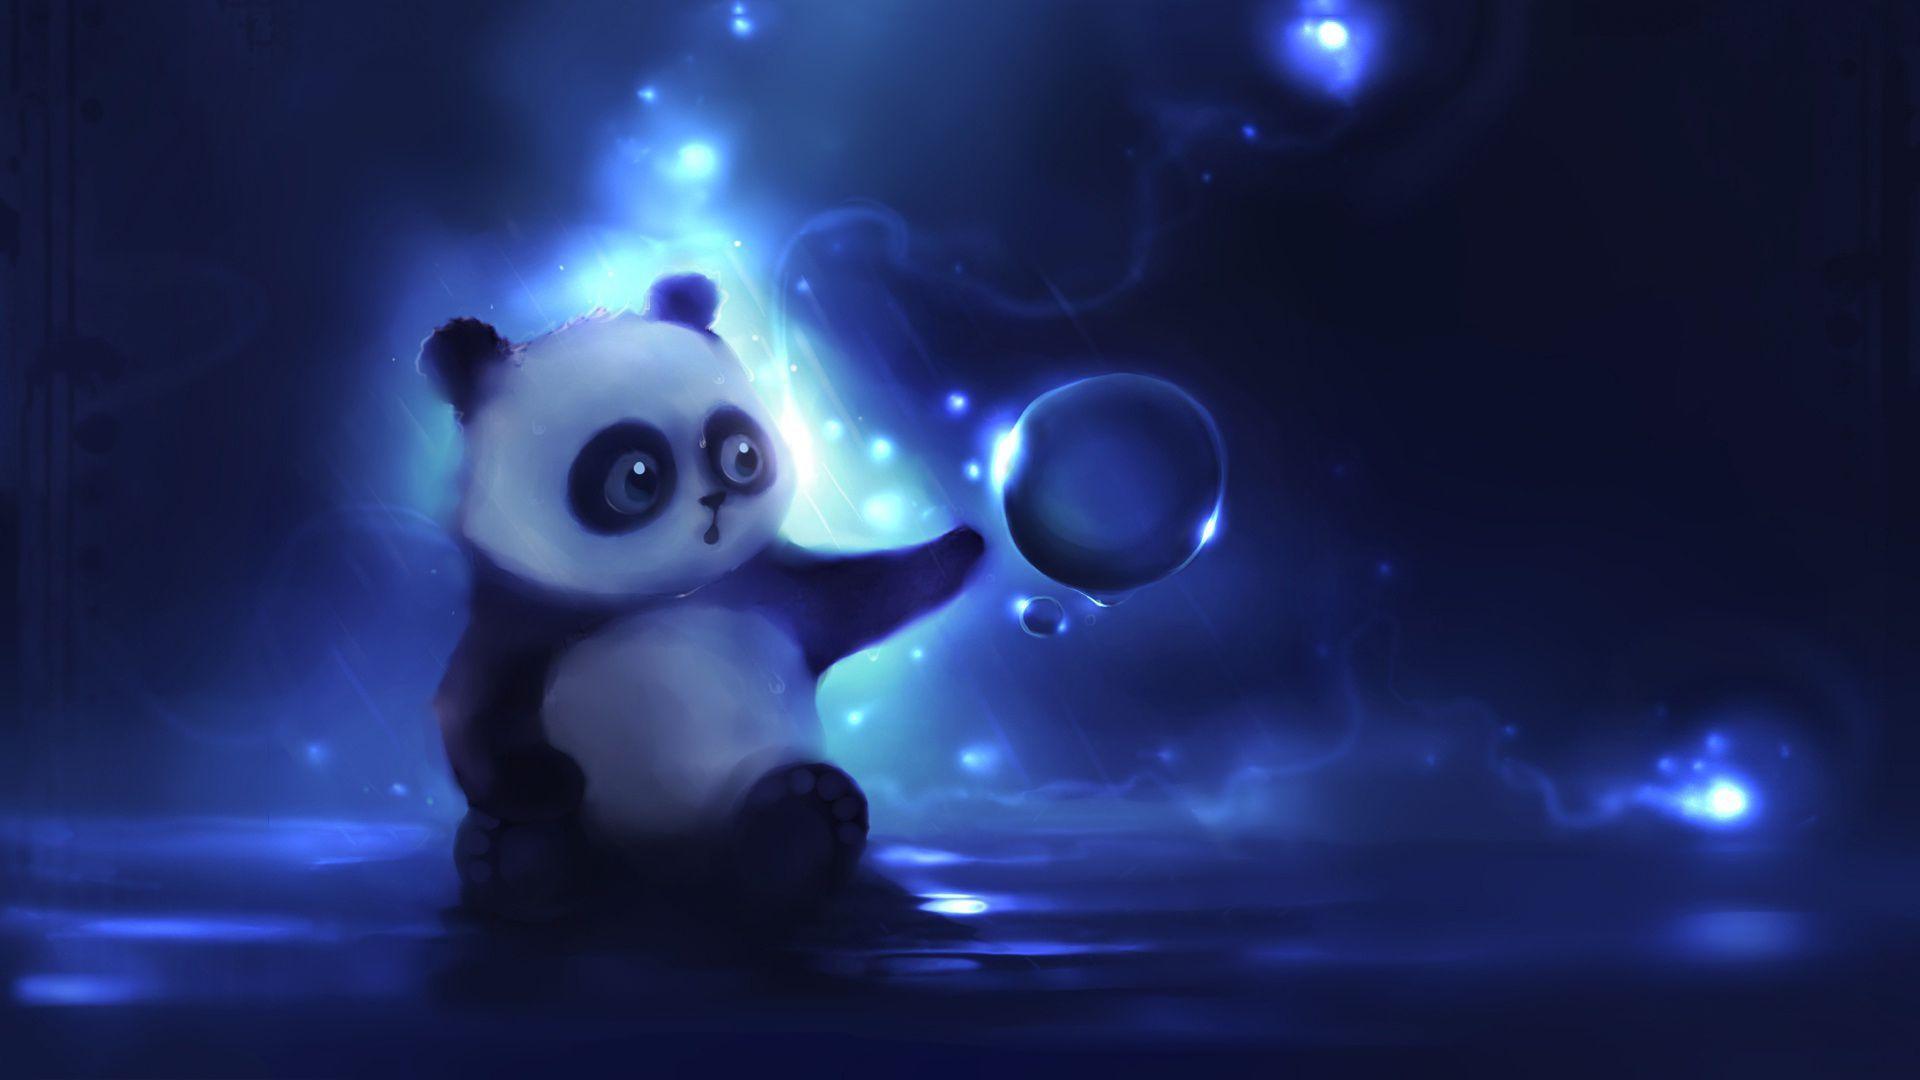 Cute Panda Background /cute